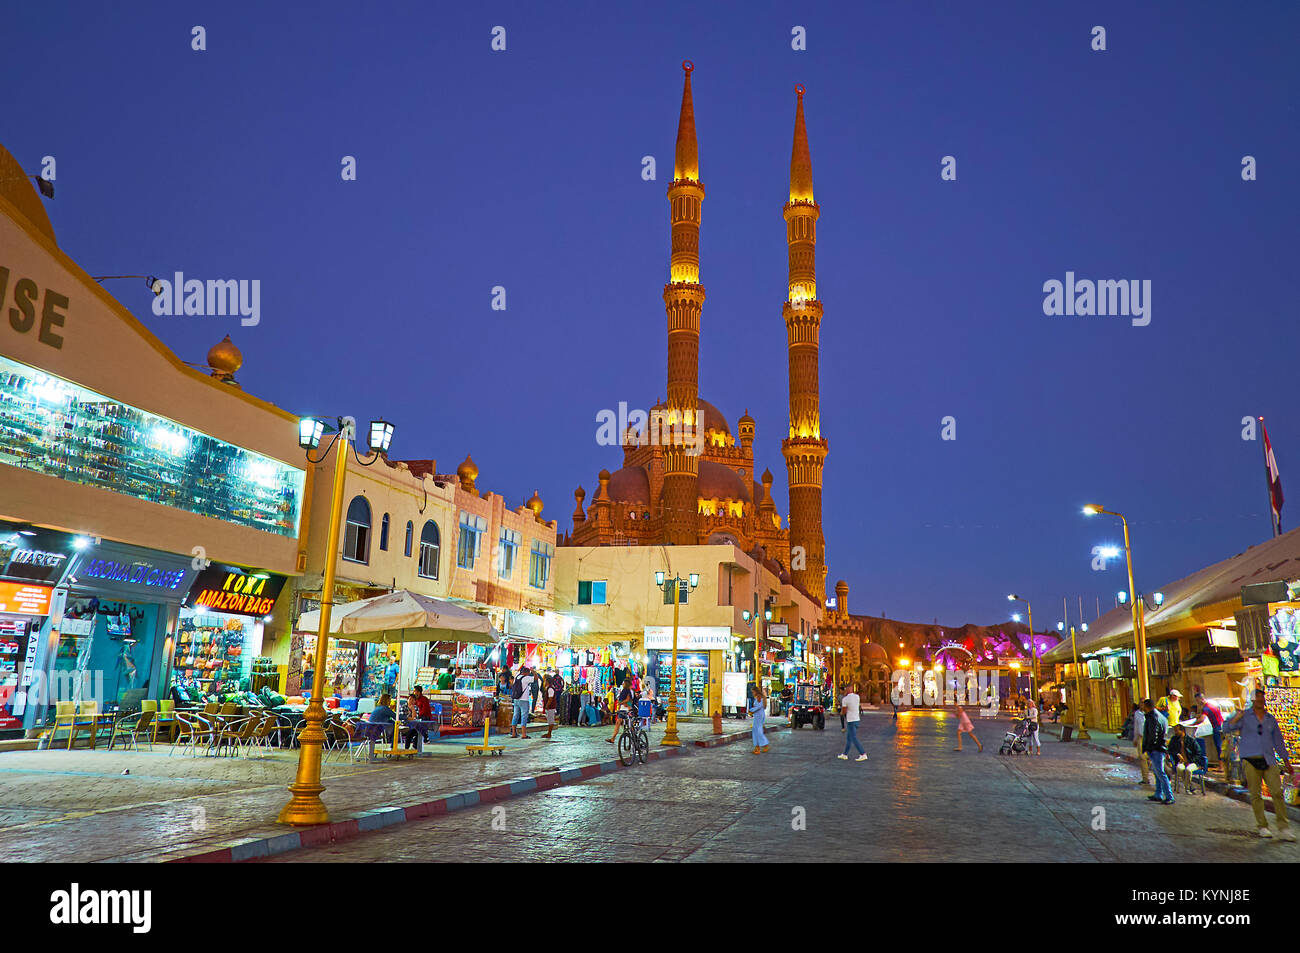 SHARM EL SHEIKH, EGYPTE- 15 DÉCEMBRE 2017 : l'agréable soirée dans le vieux marché avec de hauts minarets de Al Sahaba (Al Mustafa) mosquée sur l'arrière-plan, sur de Banque D'Images